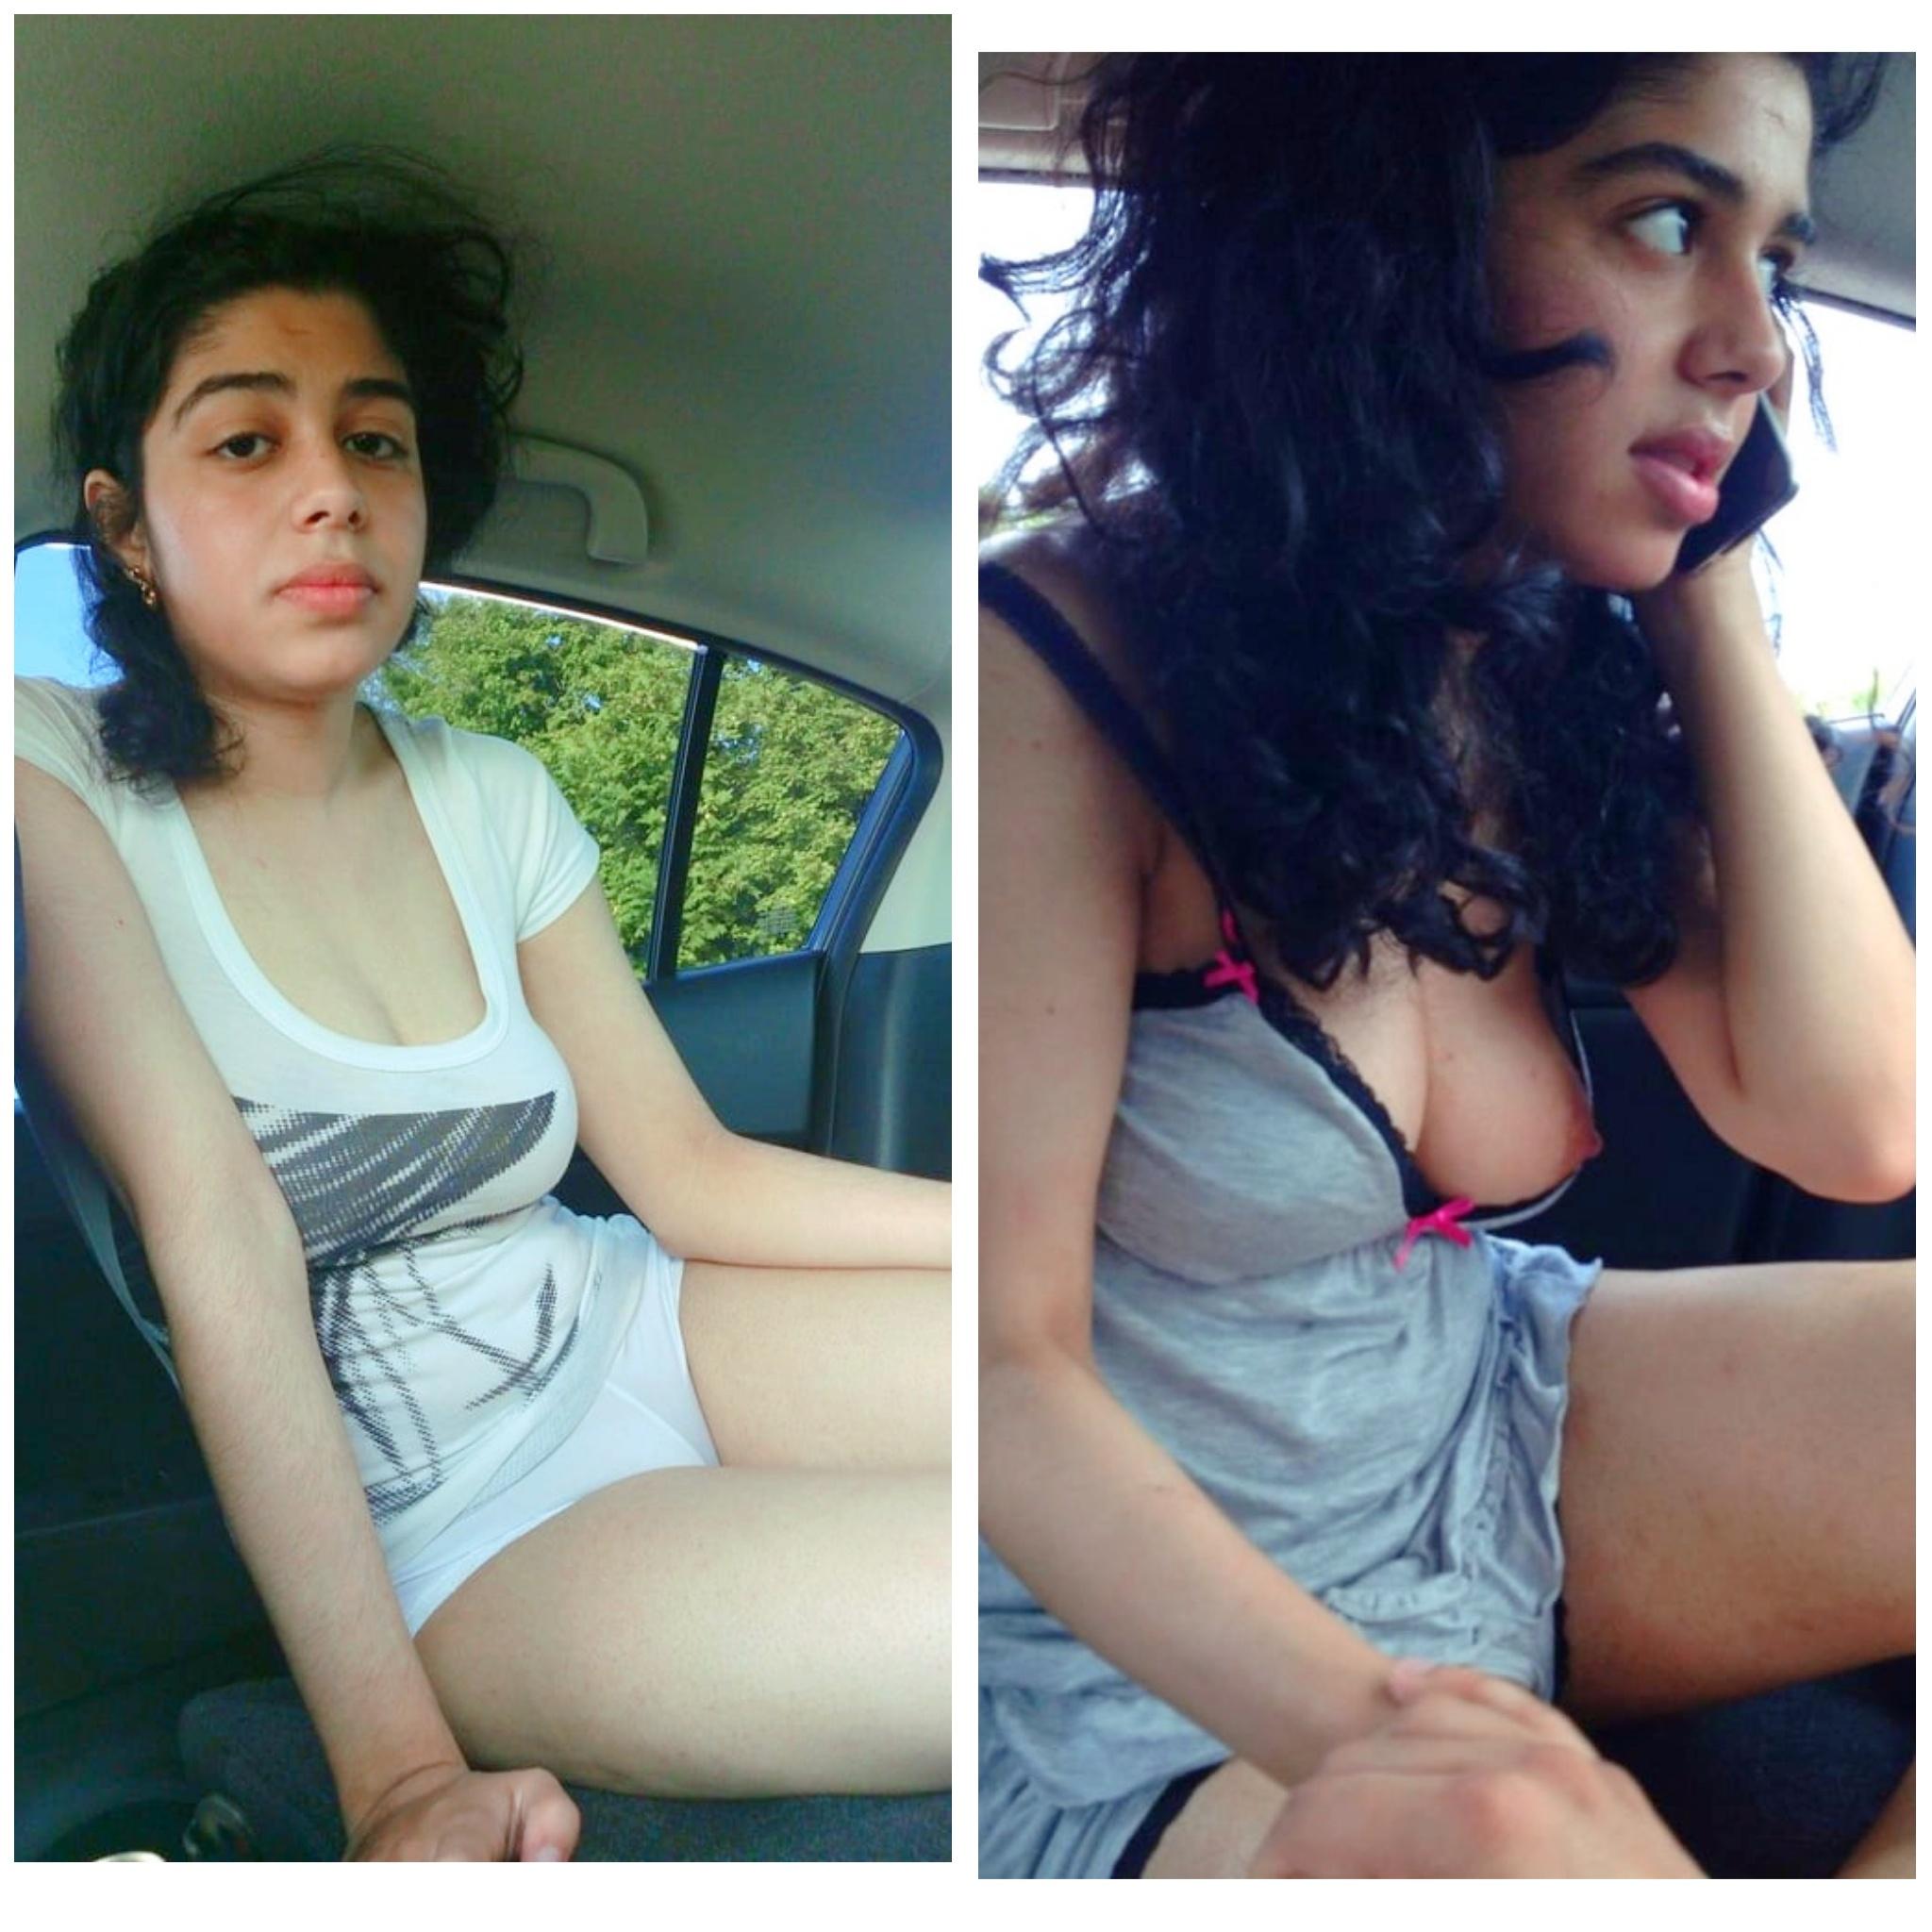 Desi Amateur Girl Nipple Slip in Car 😍♥️ FULL ALBUM 🔥🔥👇👇 Scrolller pic